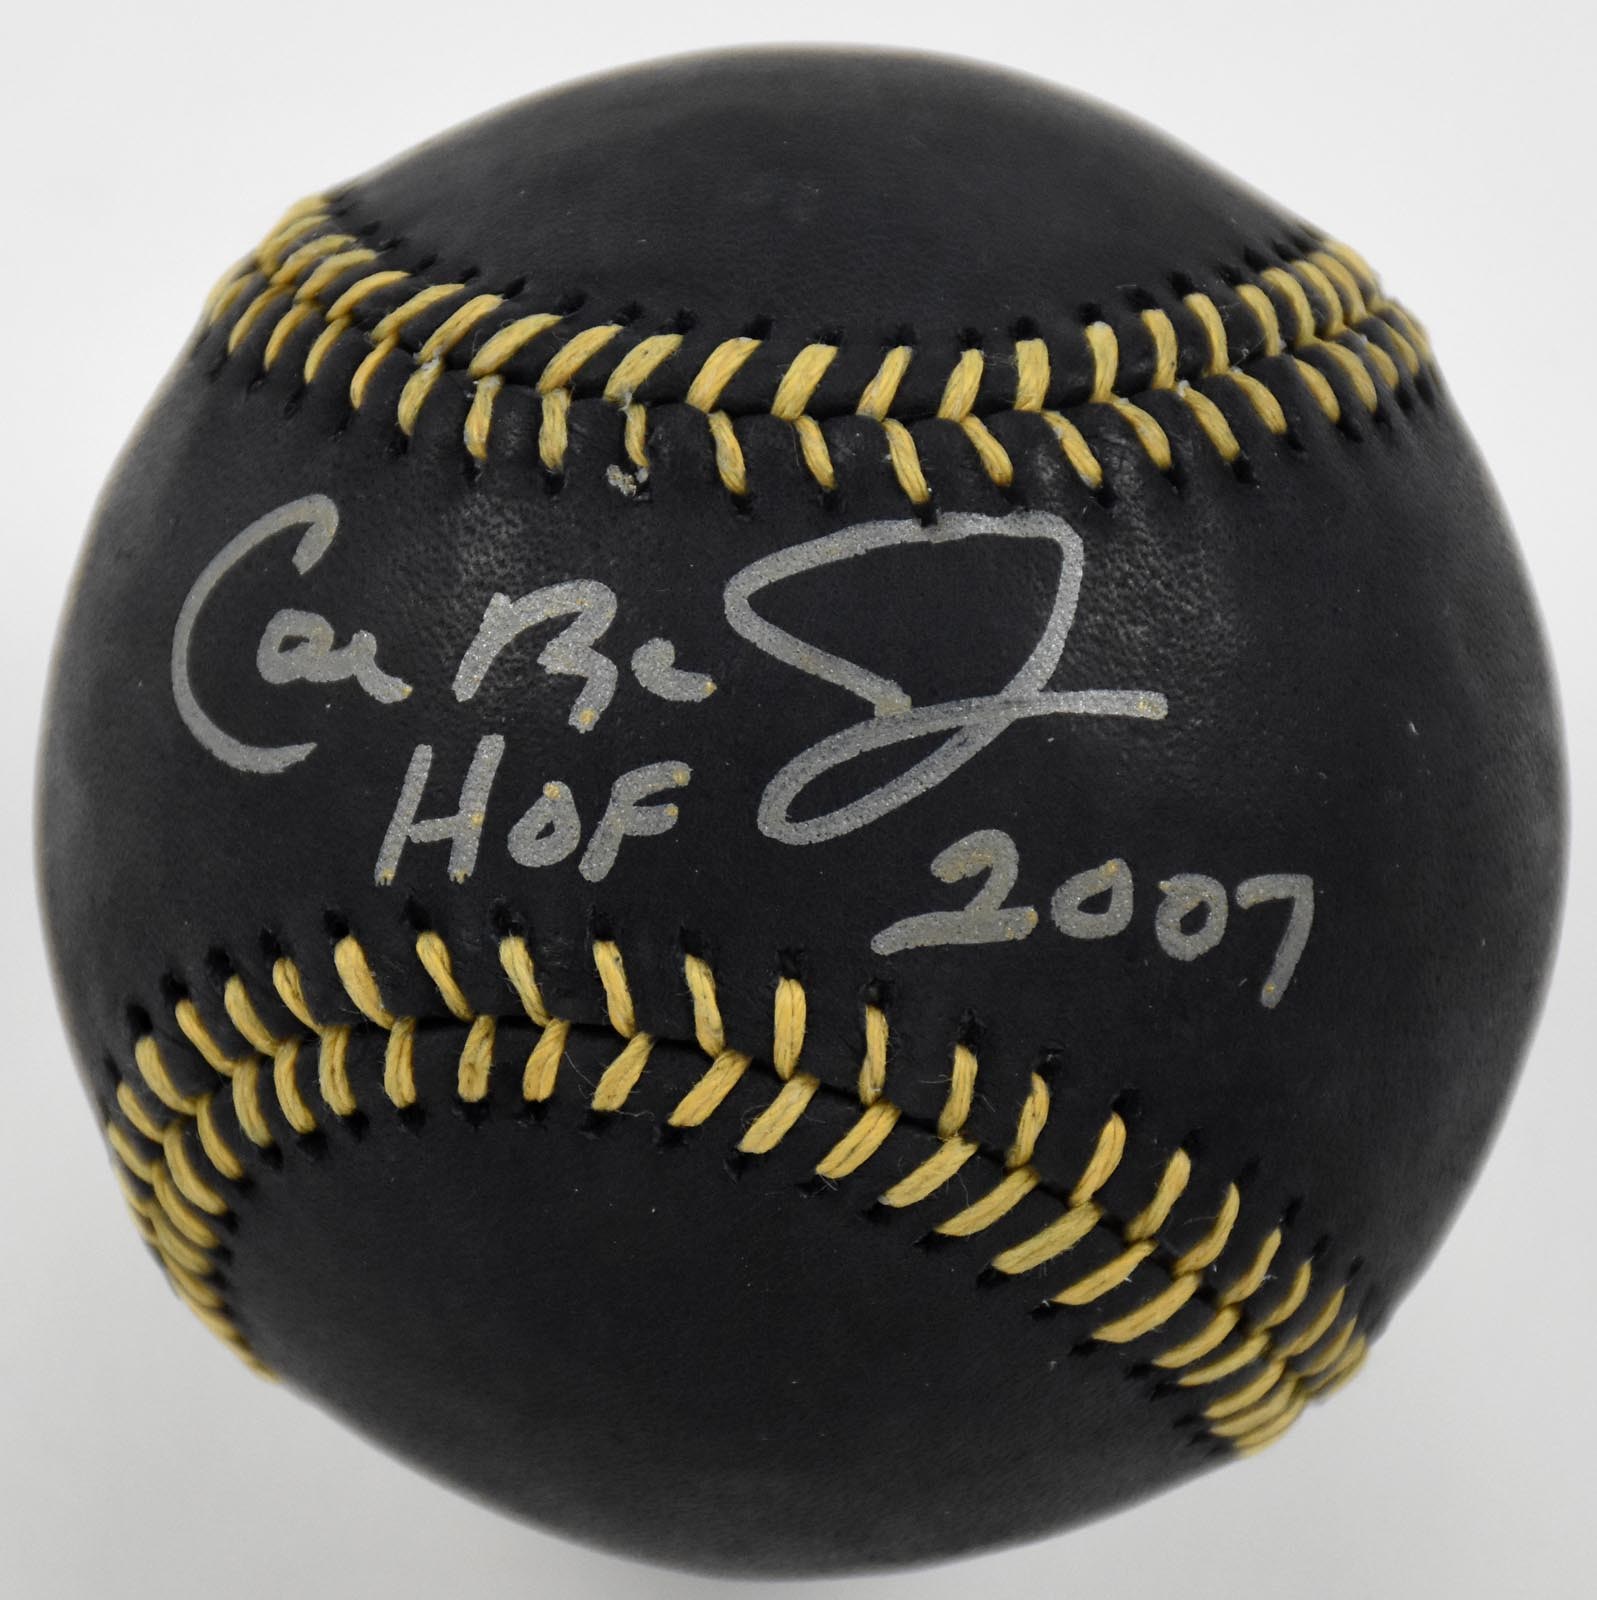 Baseball Autographs - Cal Ripken Jr "HOF 2007" Single Signed Black Leather Baseball (JSA)